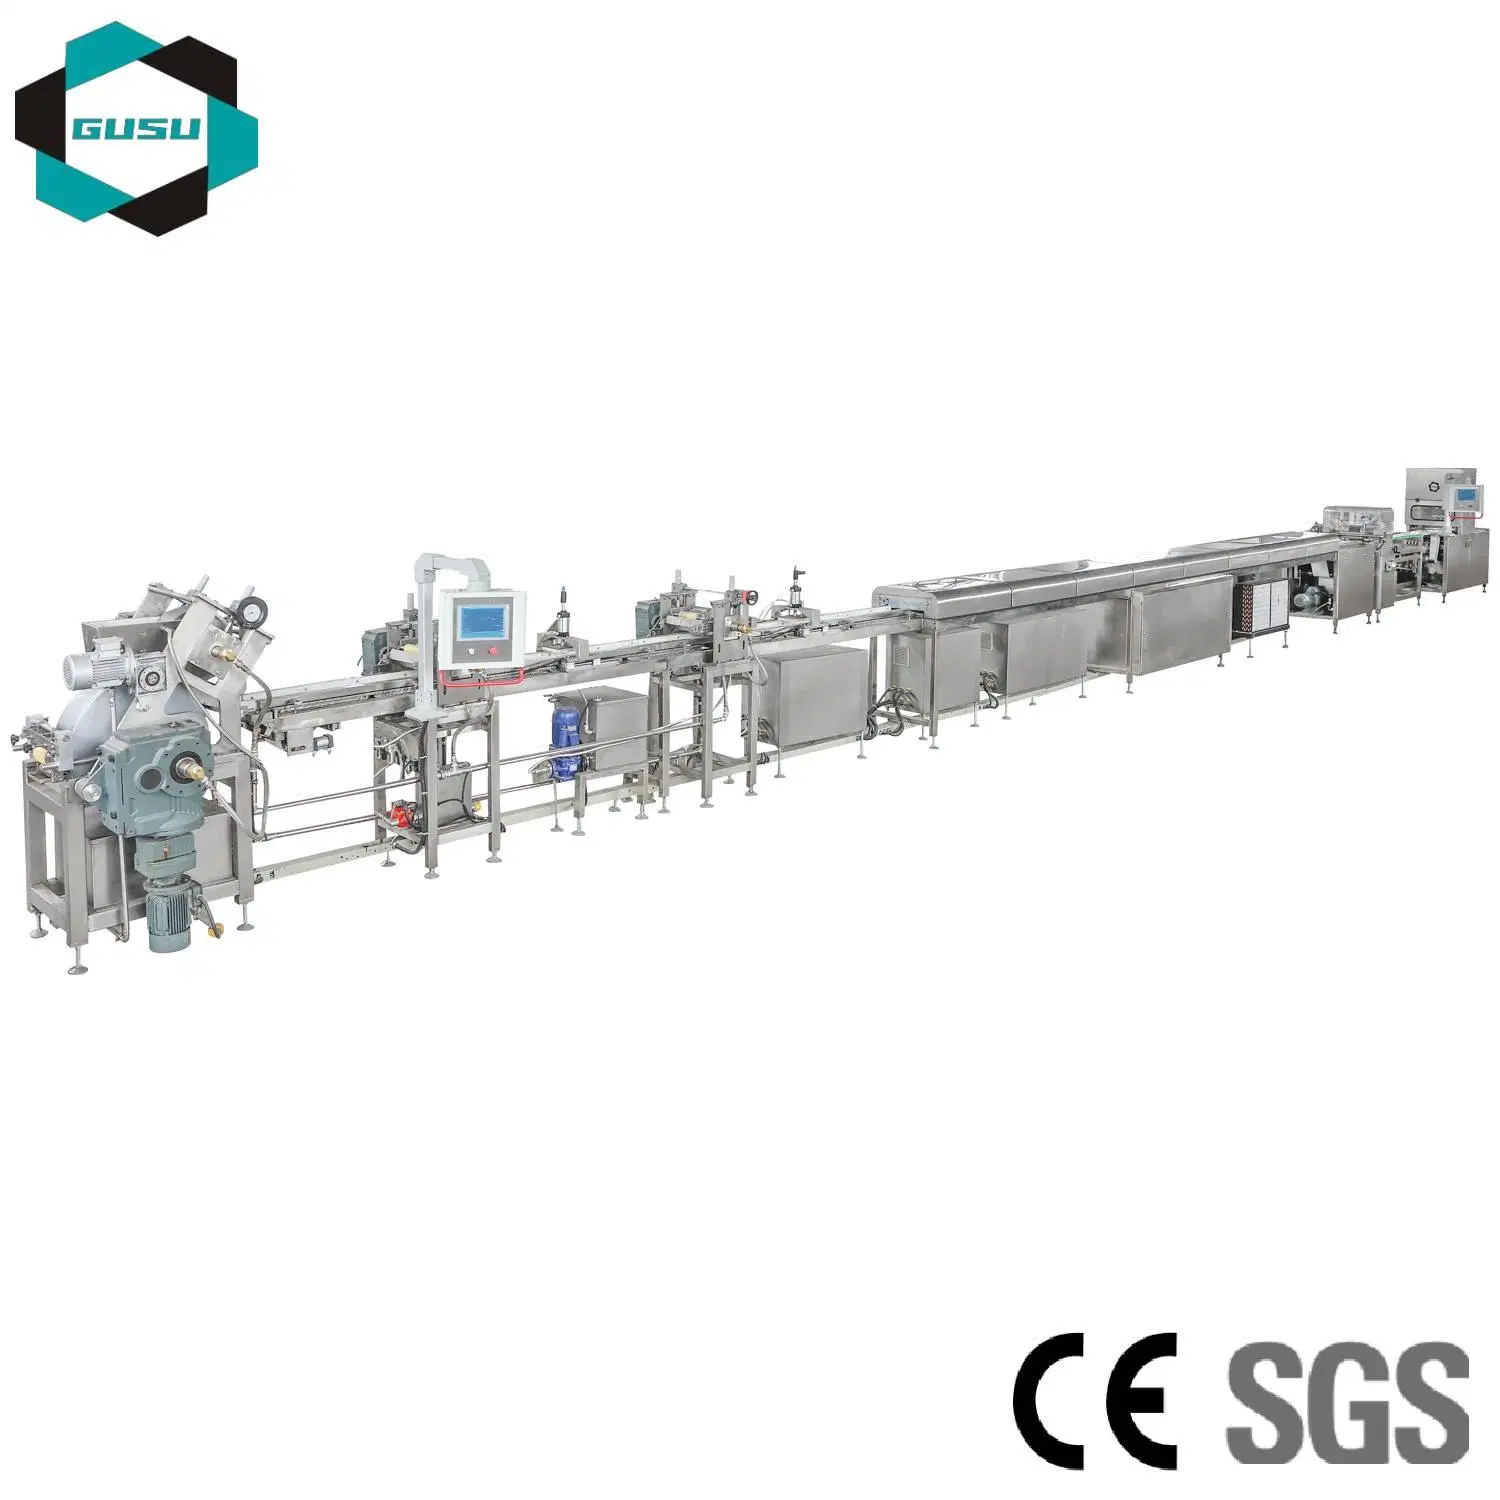 Machine de fabrication automatique de produits céréaliers, machine de fabrication de bonbons de céréales composites, machine de fabrication de chocolat